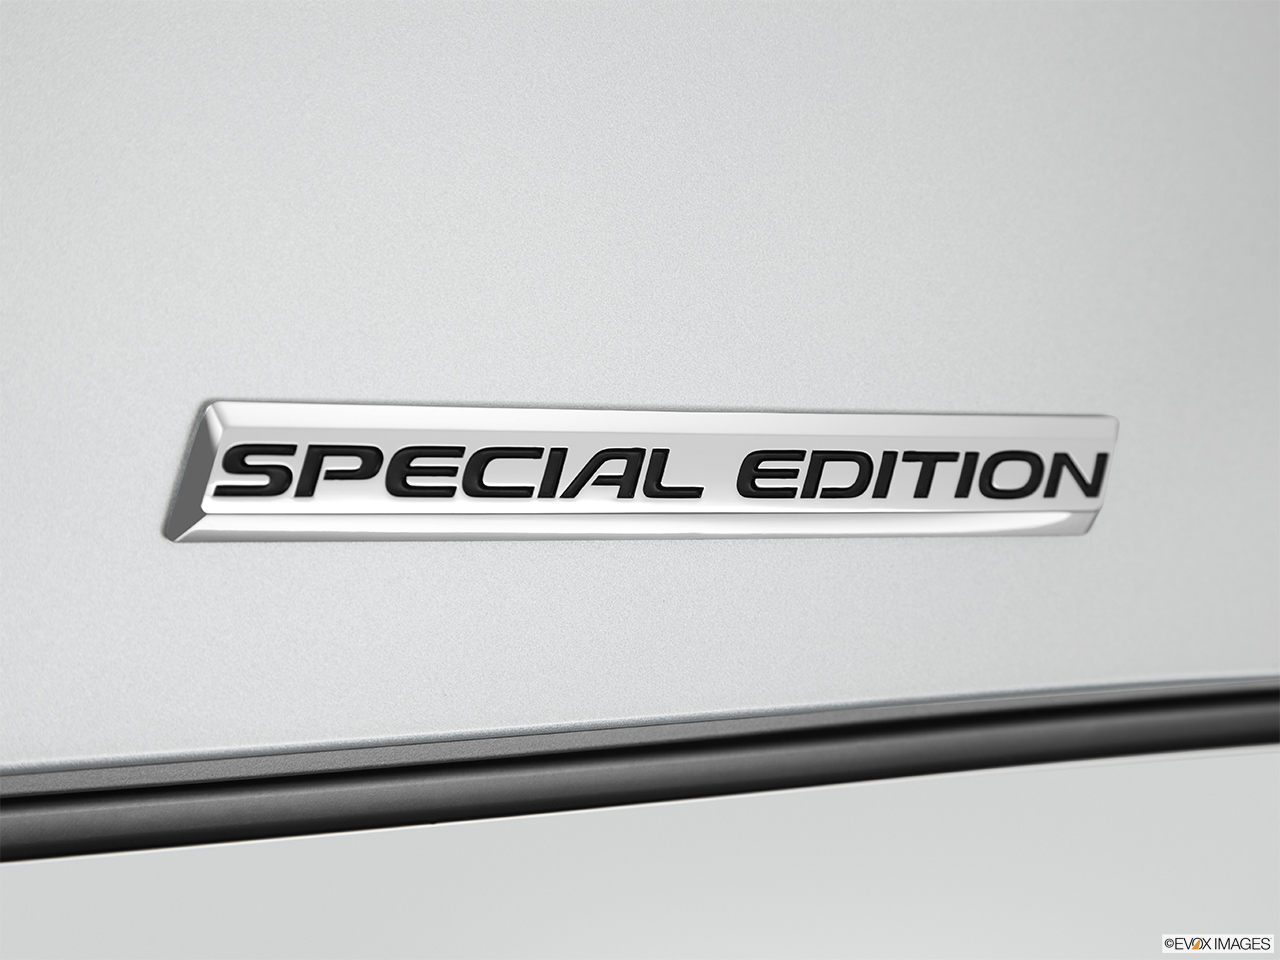 2014 Acura TL Special Edition Exterior Bonus Shots (no set spec) 